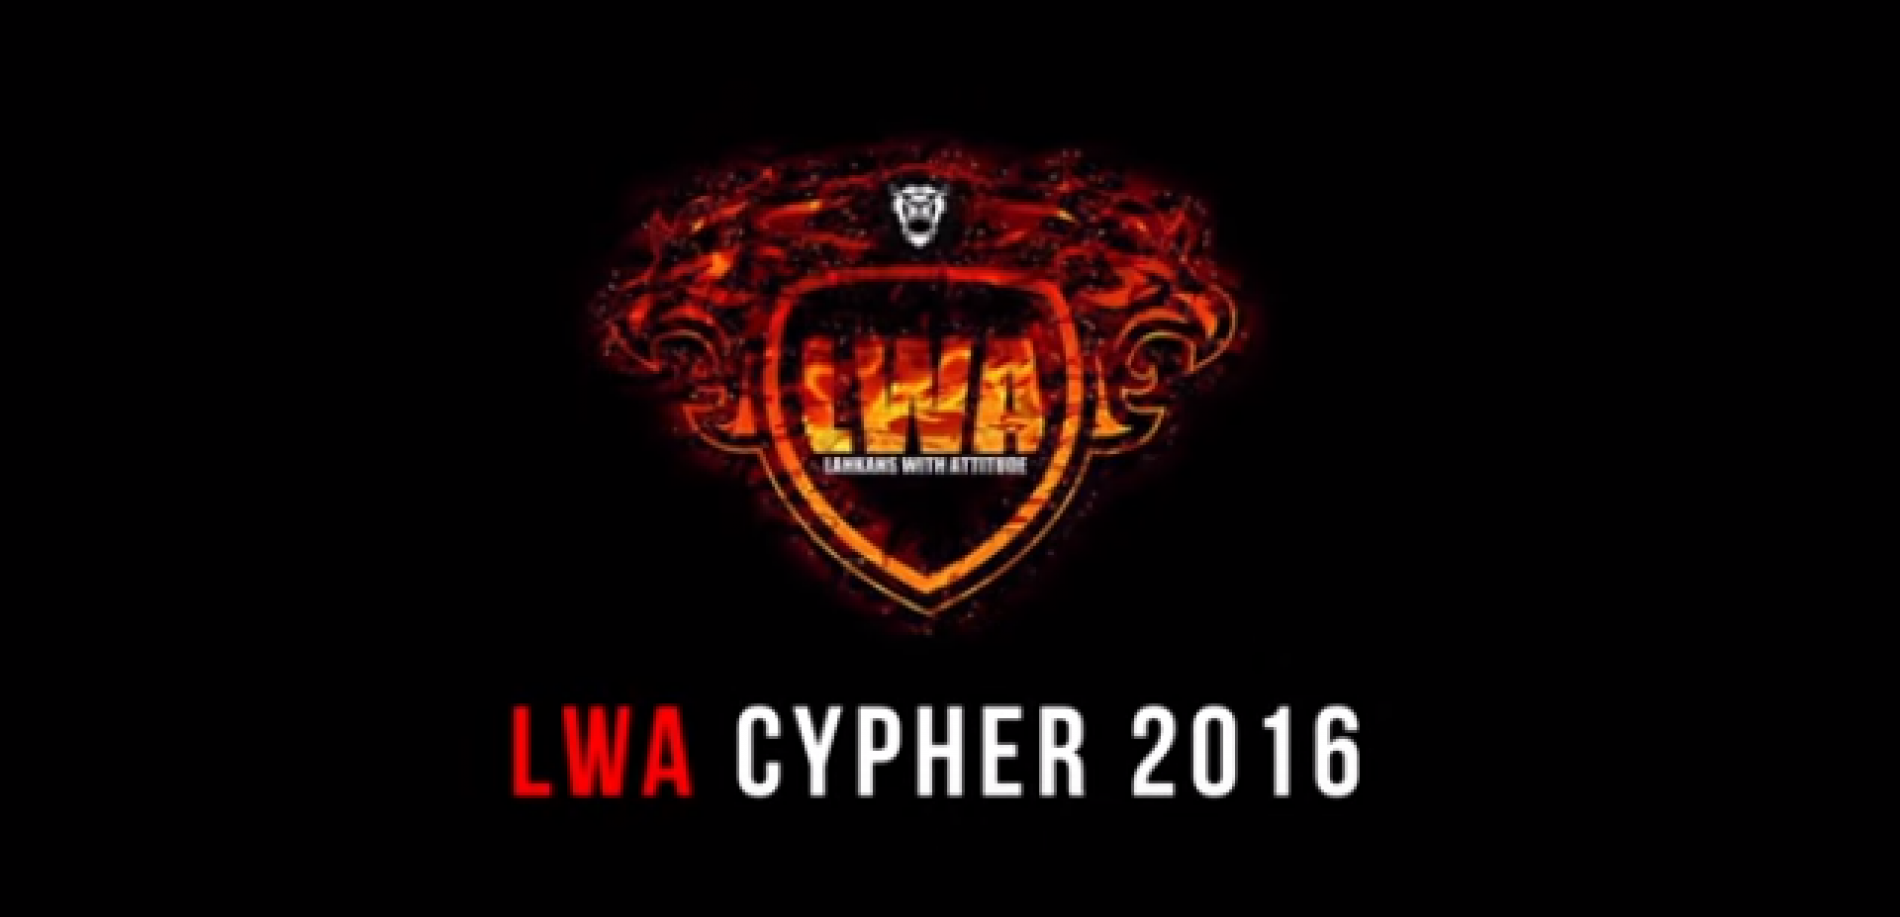 LWA CYPHER 2016 (Lankans With Attitude)